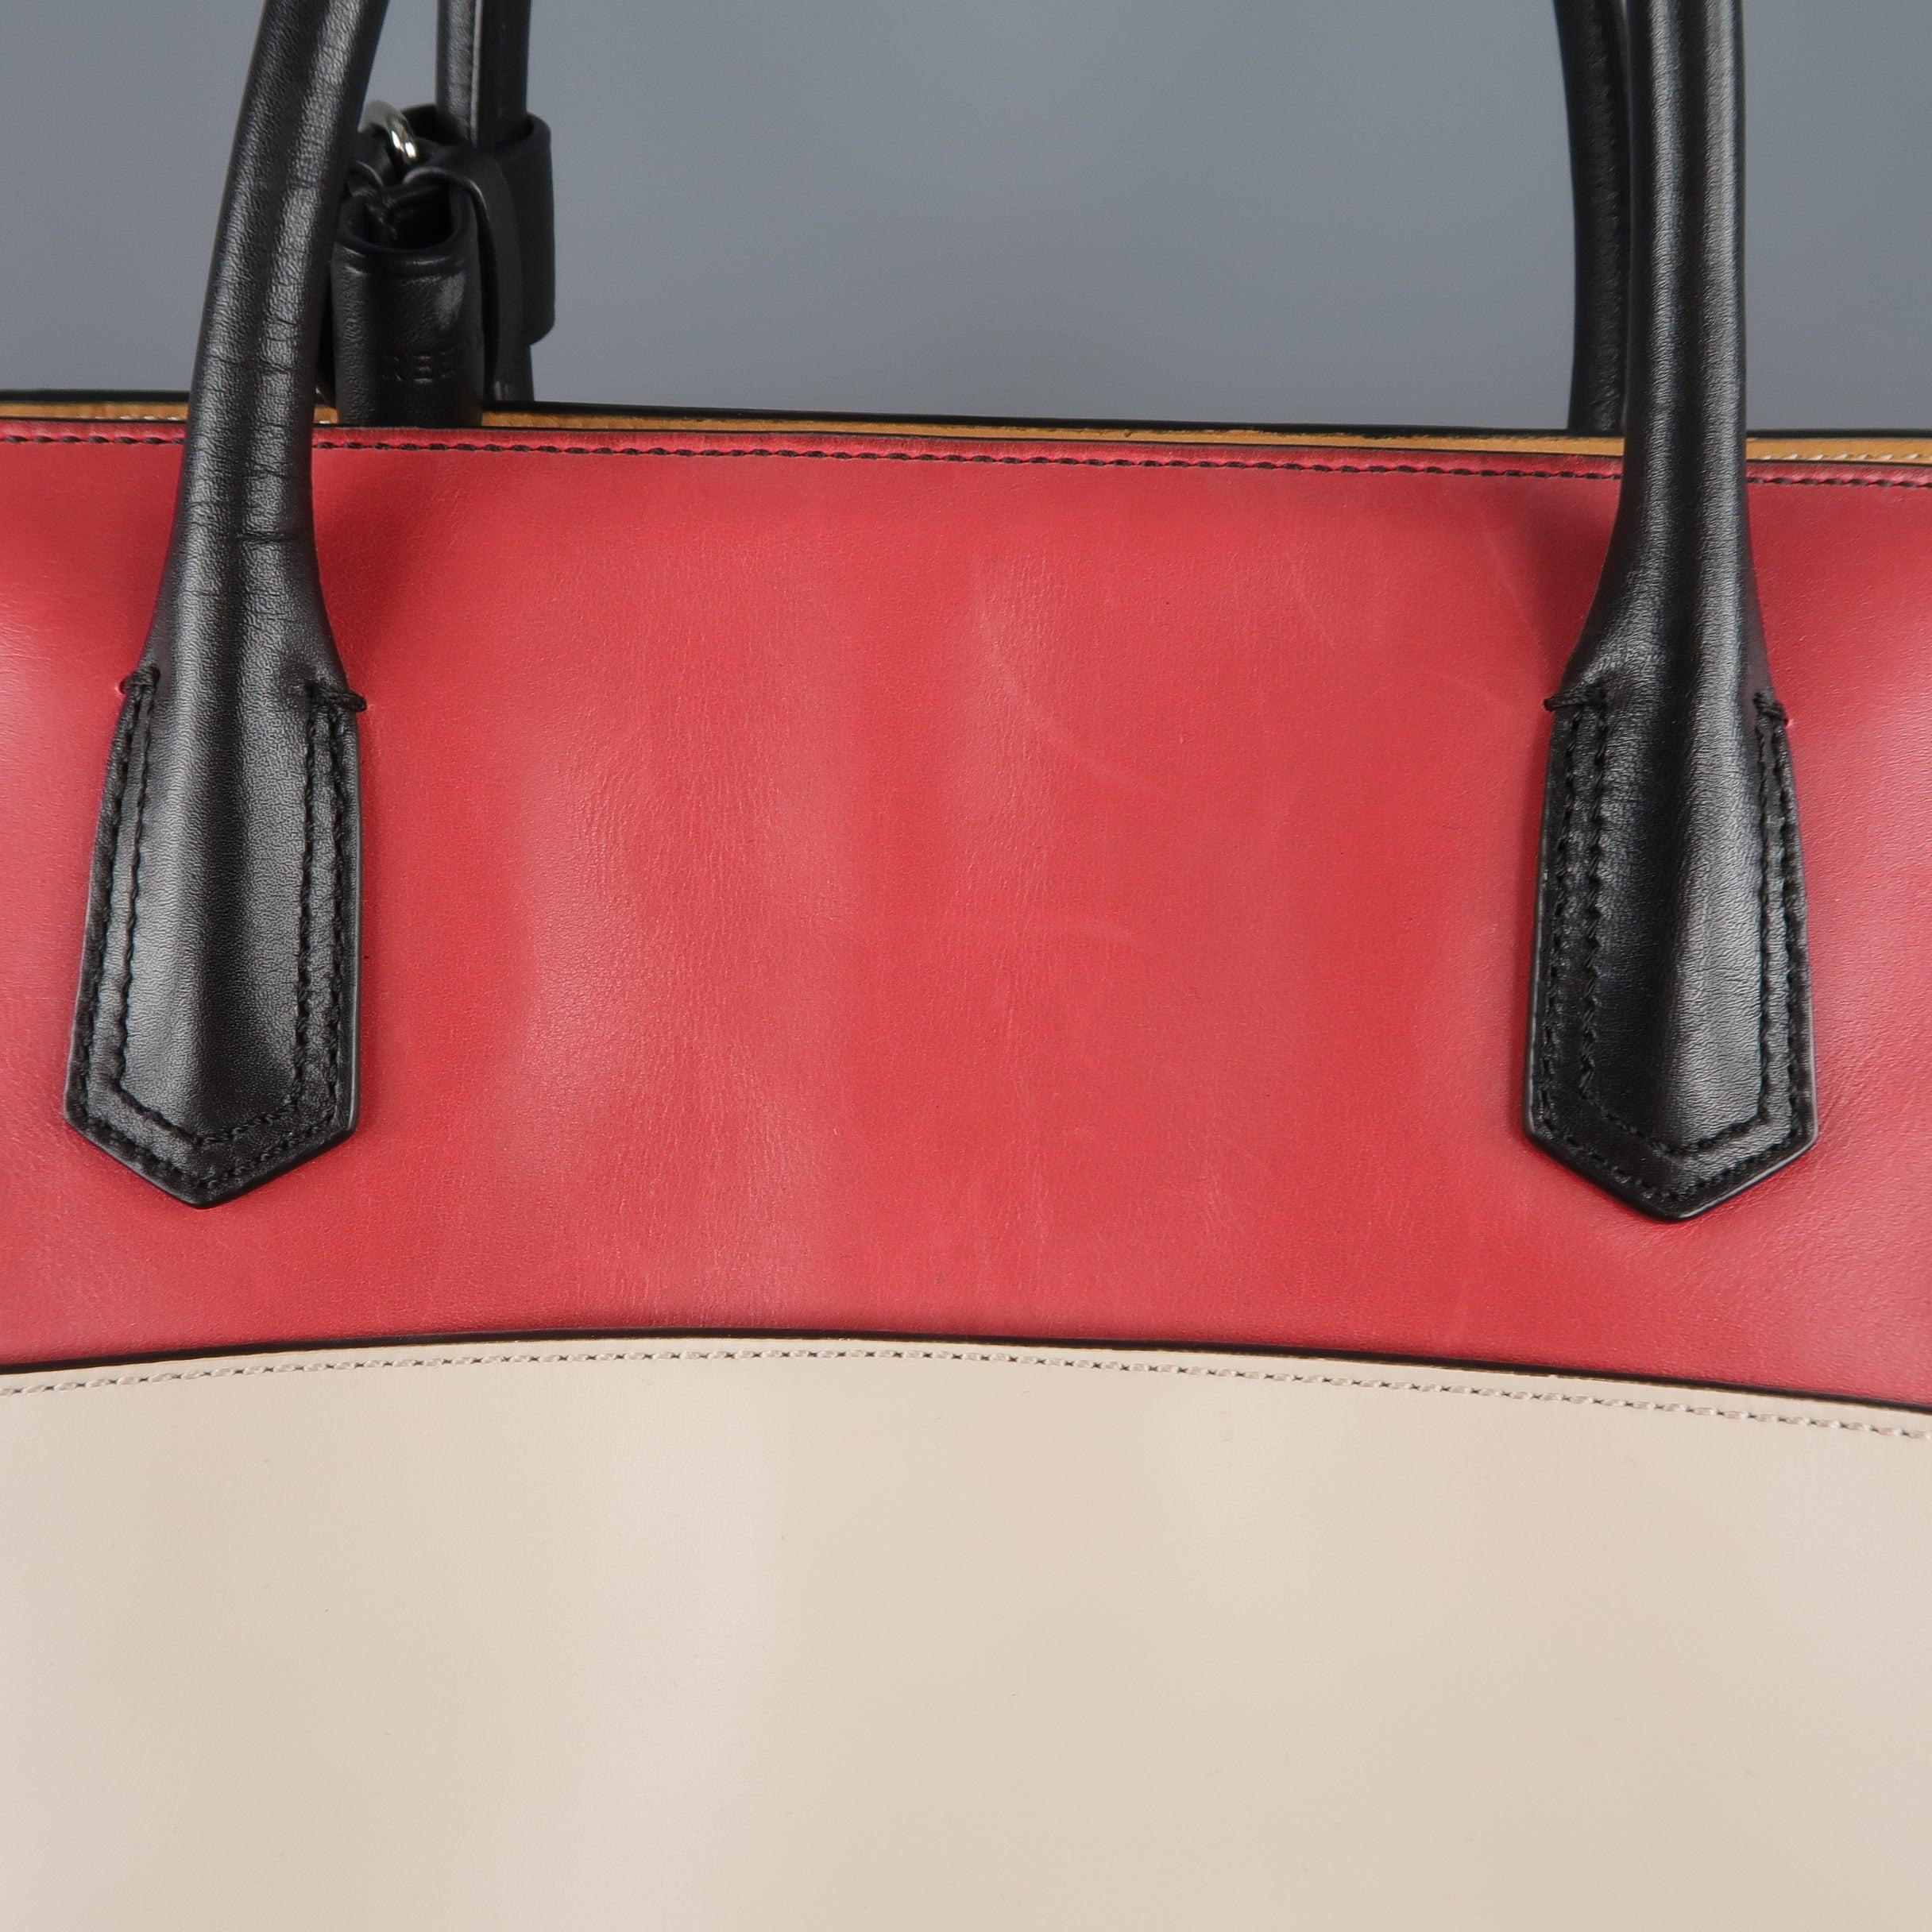 REED KRAKOFF Red Black & Light Pink Leather Tote Handbag For Sale 1